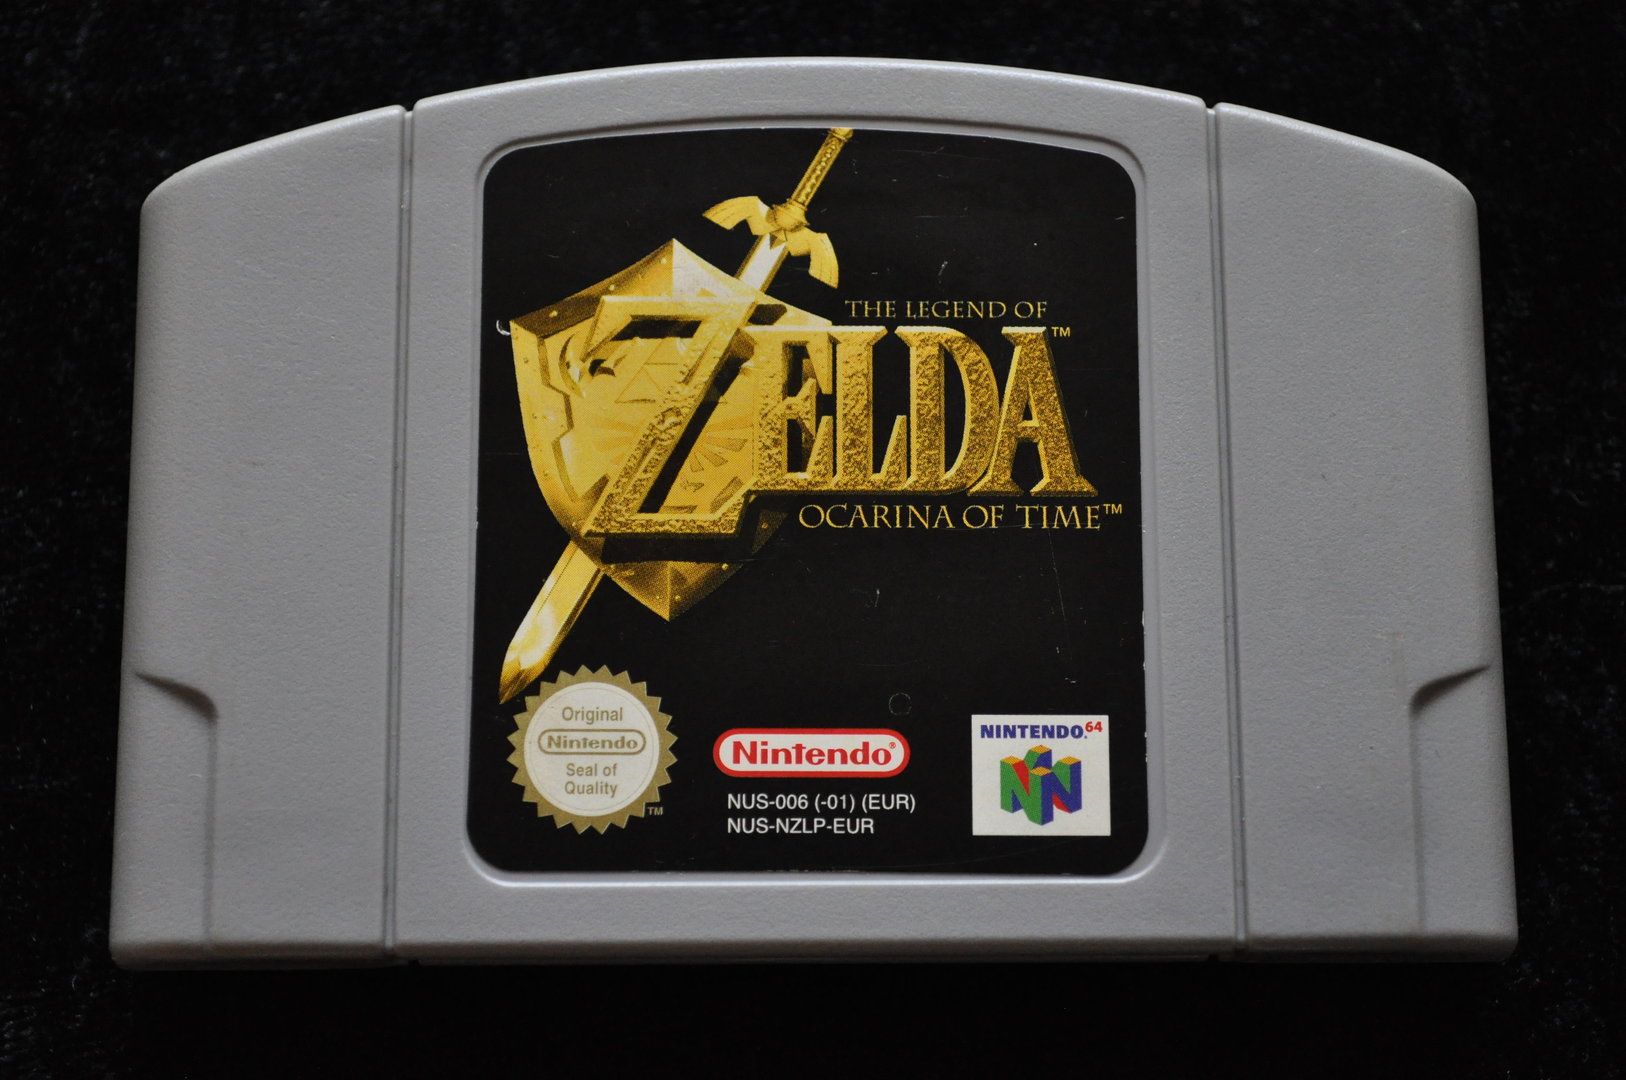 The Legend of Zelda Ocariona of Time